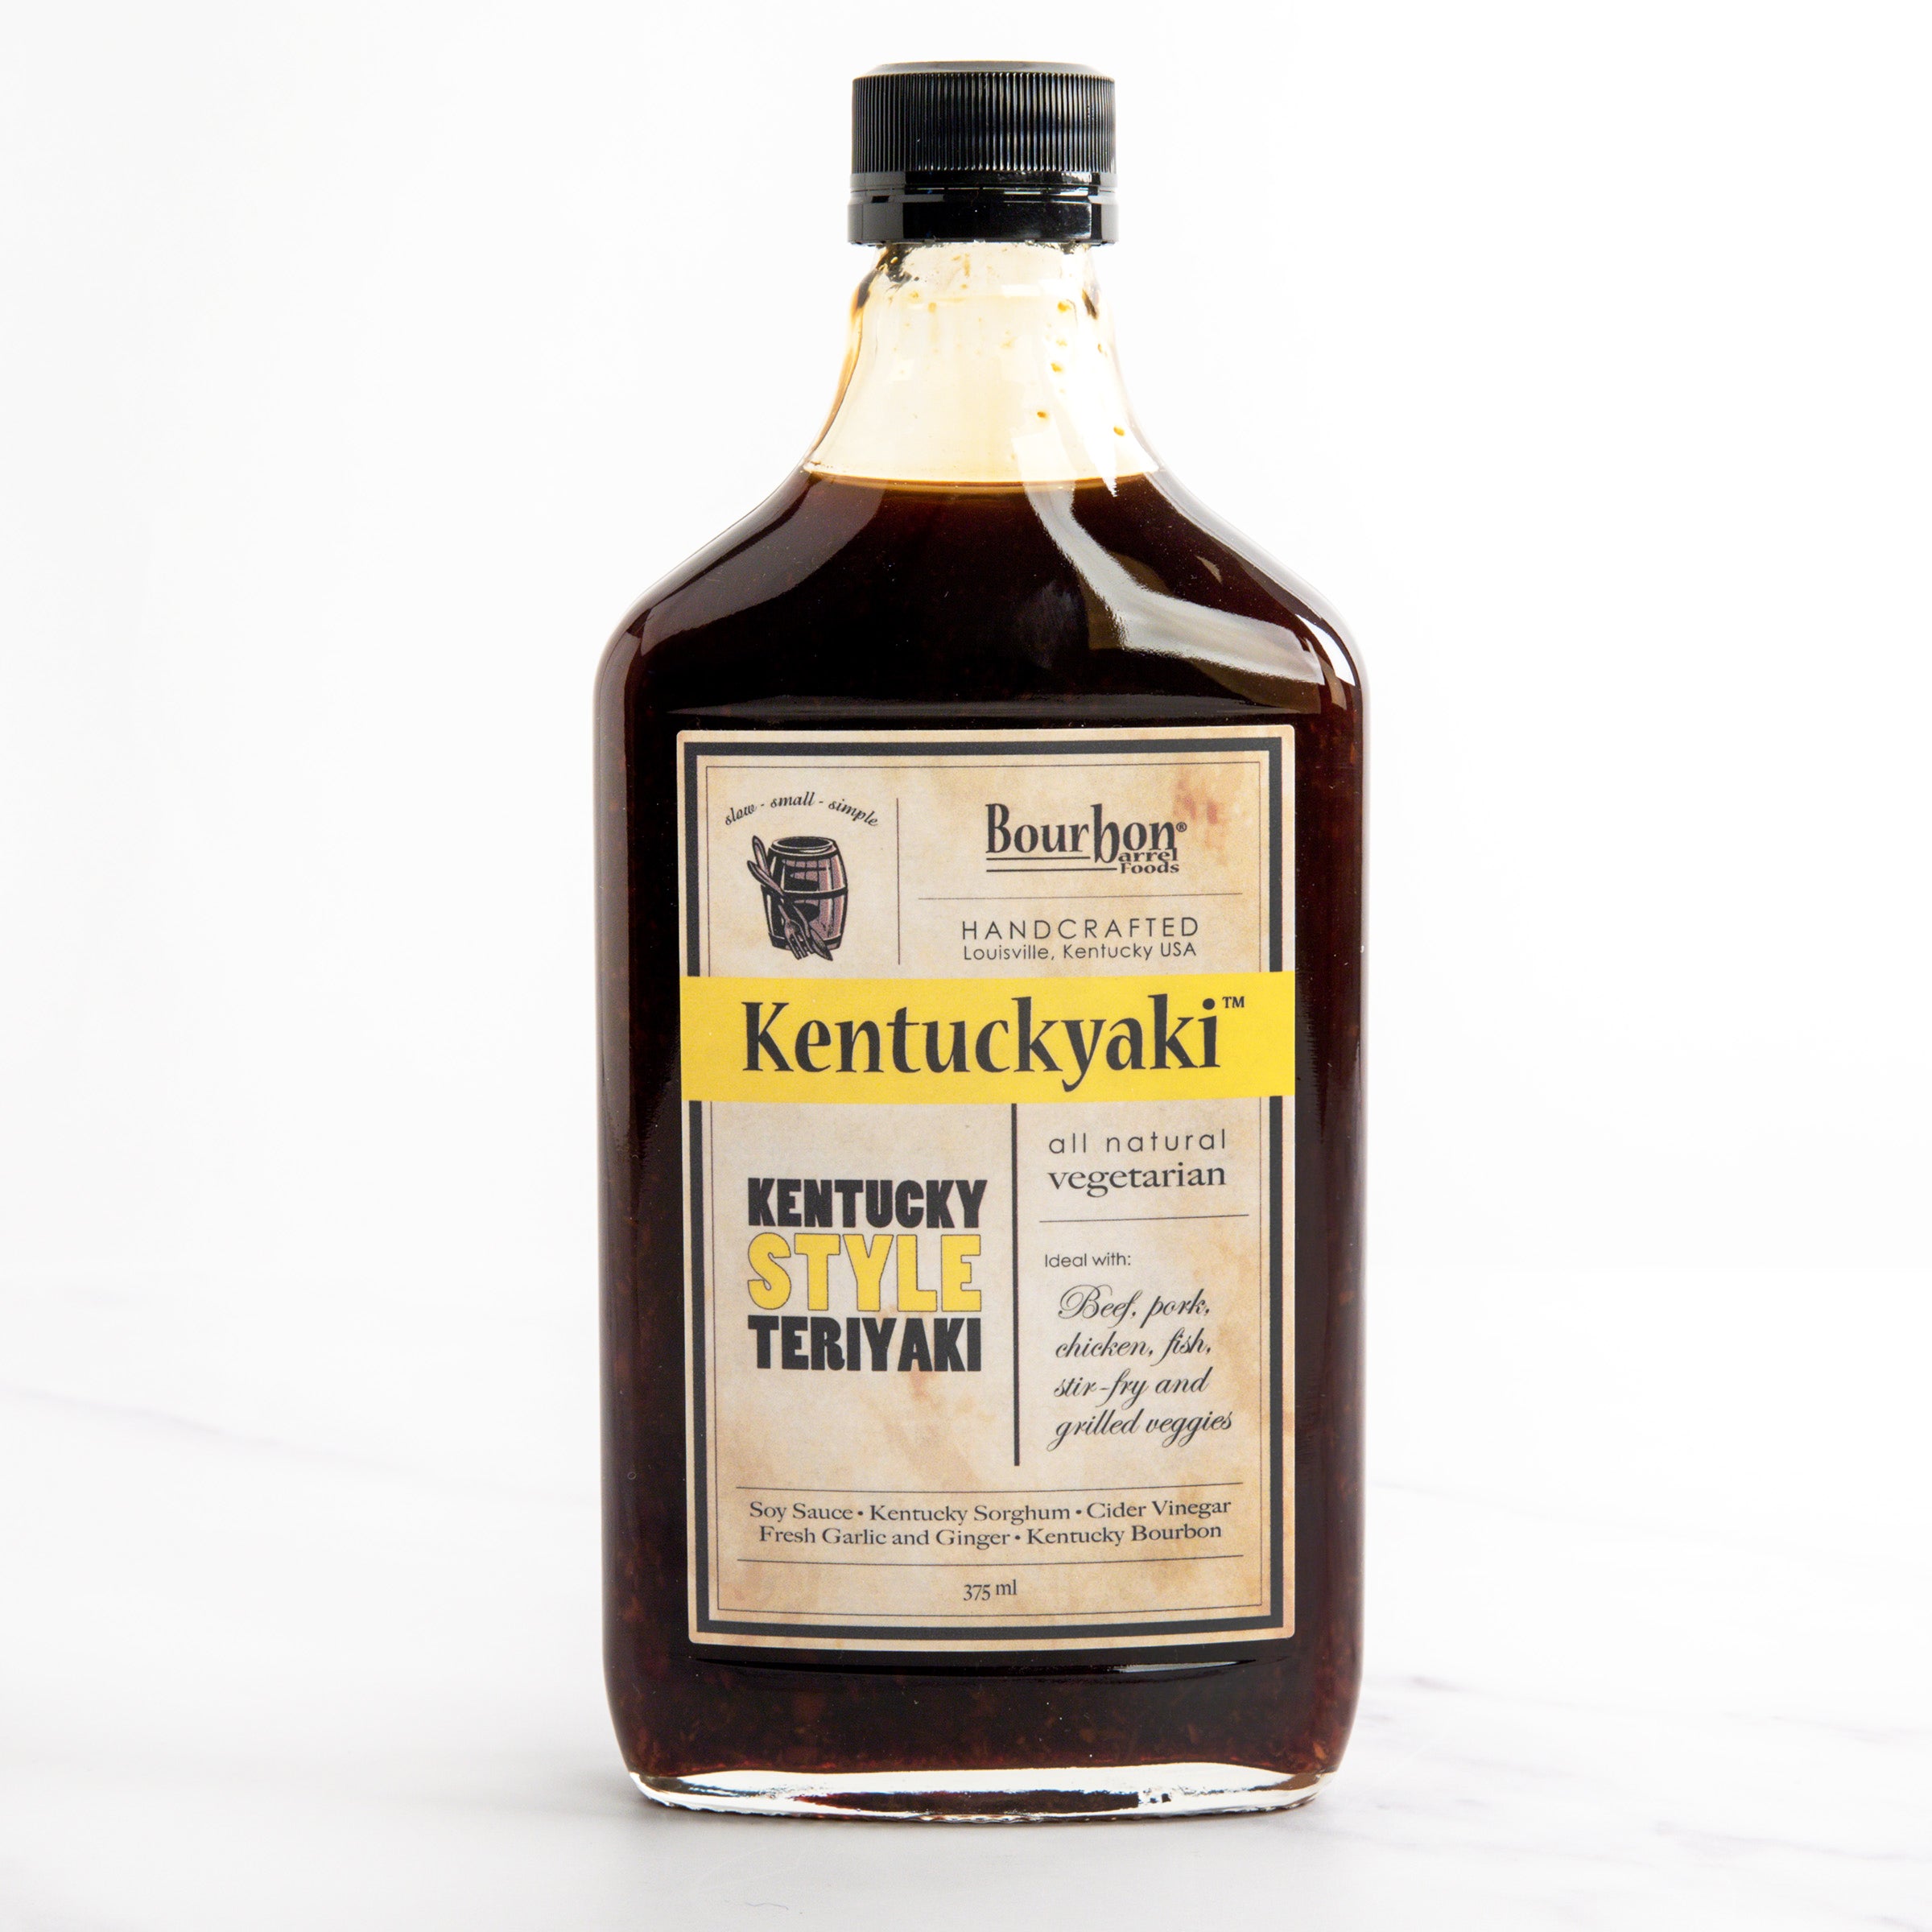 Bourbon Barrel Foods Kentuckyaki Teriyaki Sauce - 375 ml bottle